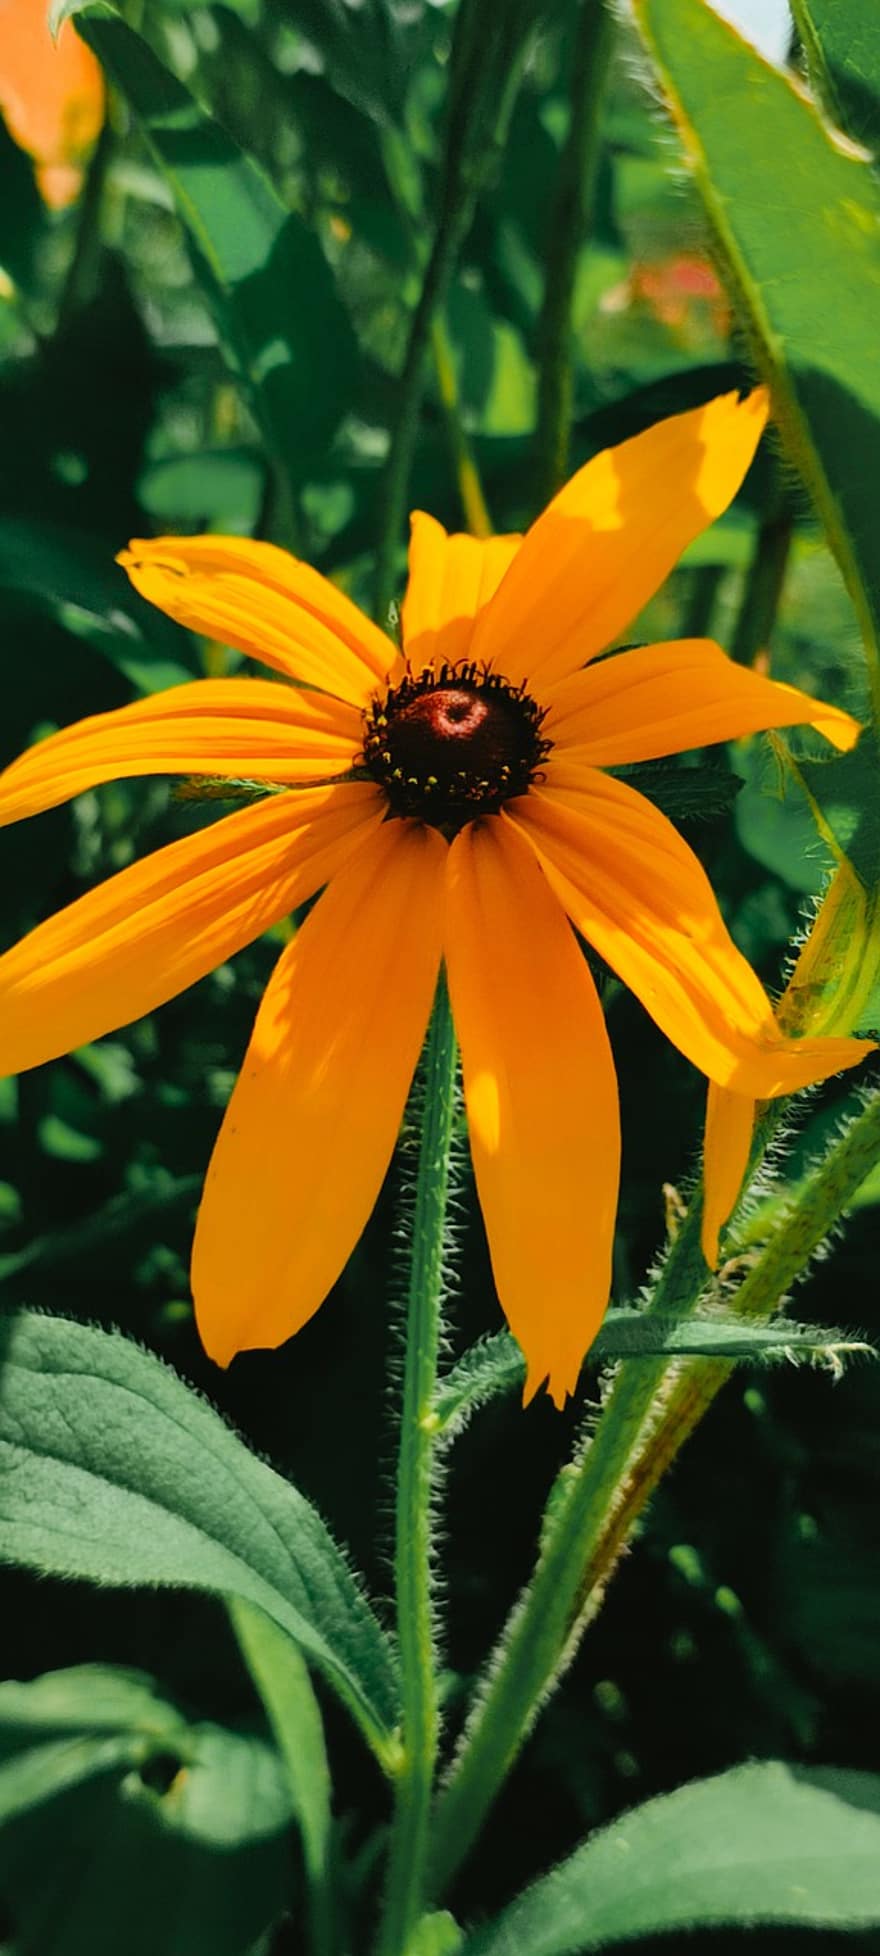 coneflower, fiore, pianta, Black Eyed Susan, fiore giallo, petali, fioritura, le foglie, natura, estate